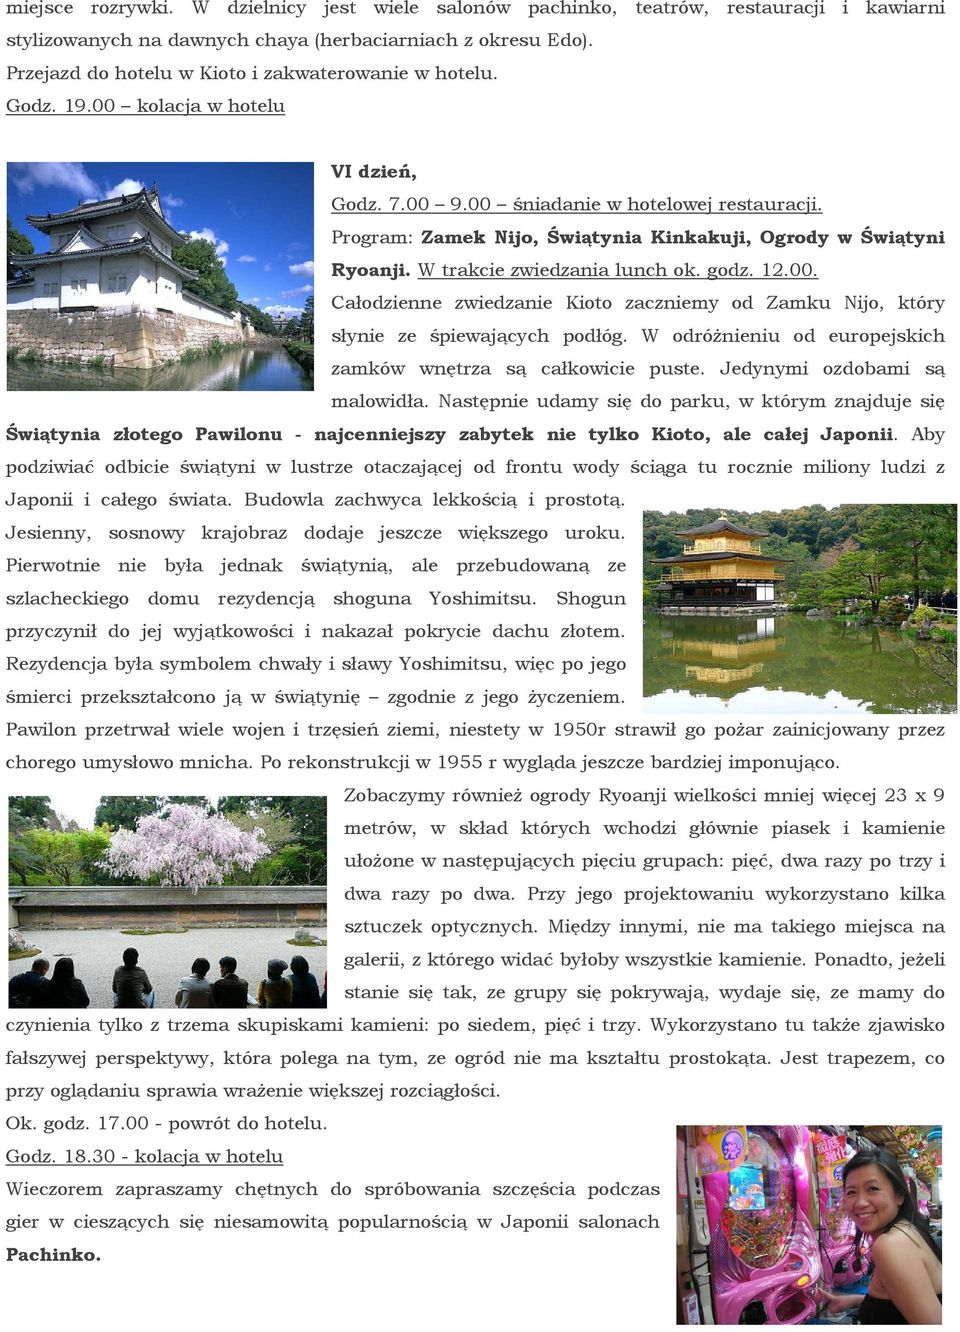 Program: Zamek Nijo, Świątynia Kinkakuji, Ogrody w Świątyni Ryoanji. W trakcie zwiedzania lunch ok. godz. 12.00.